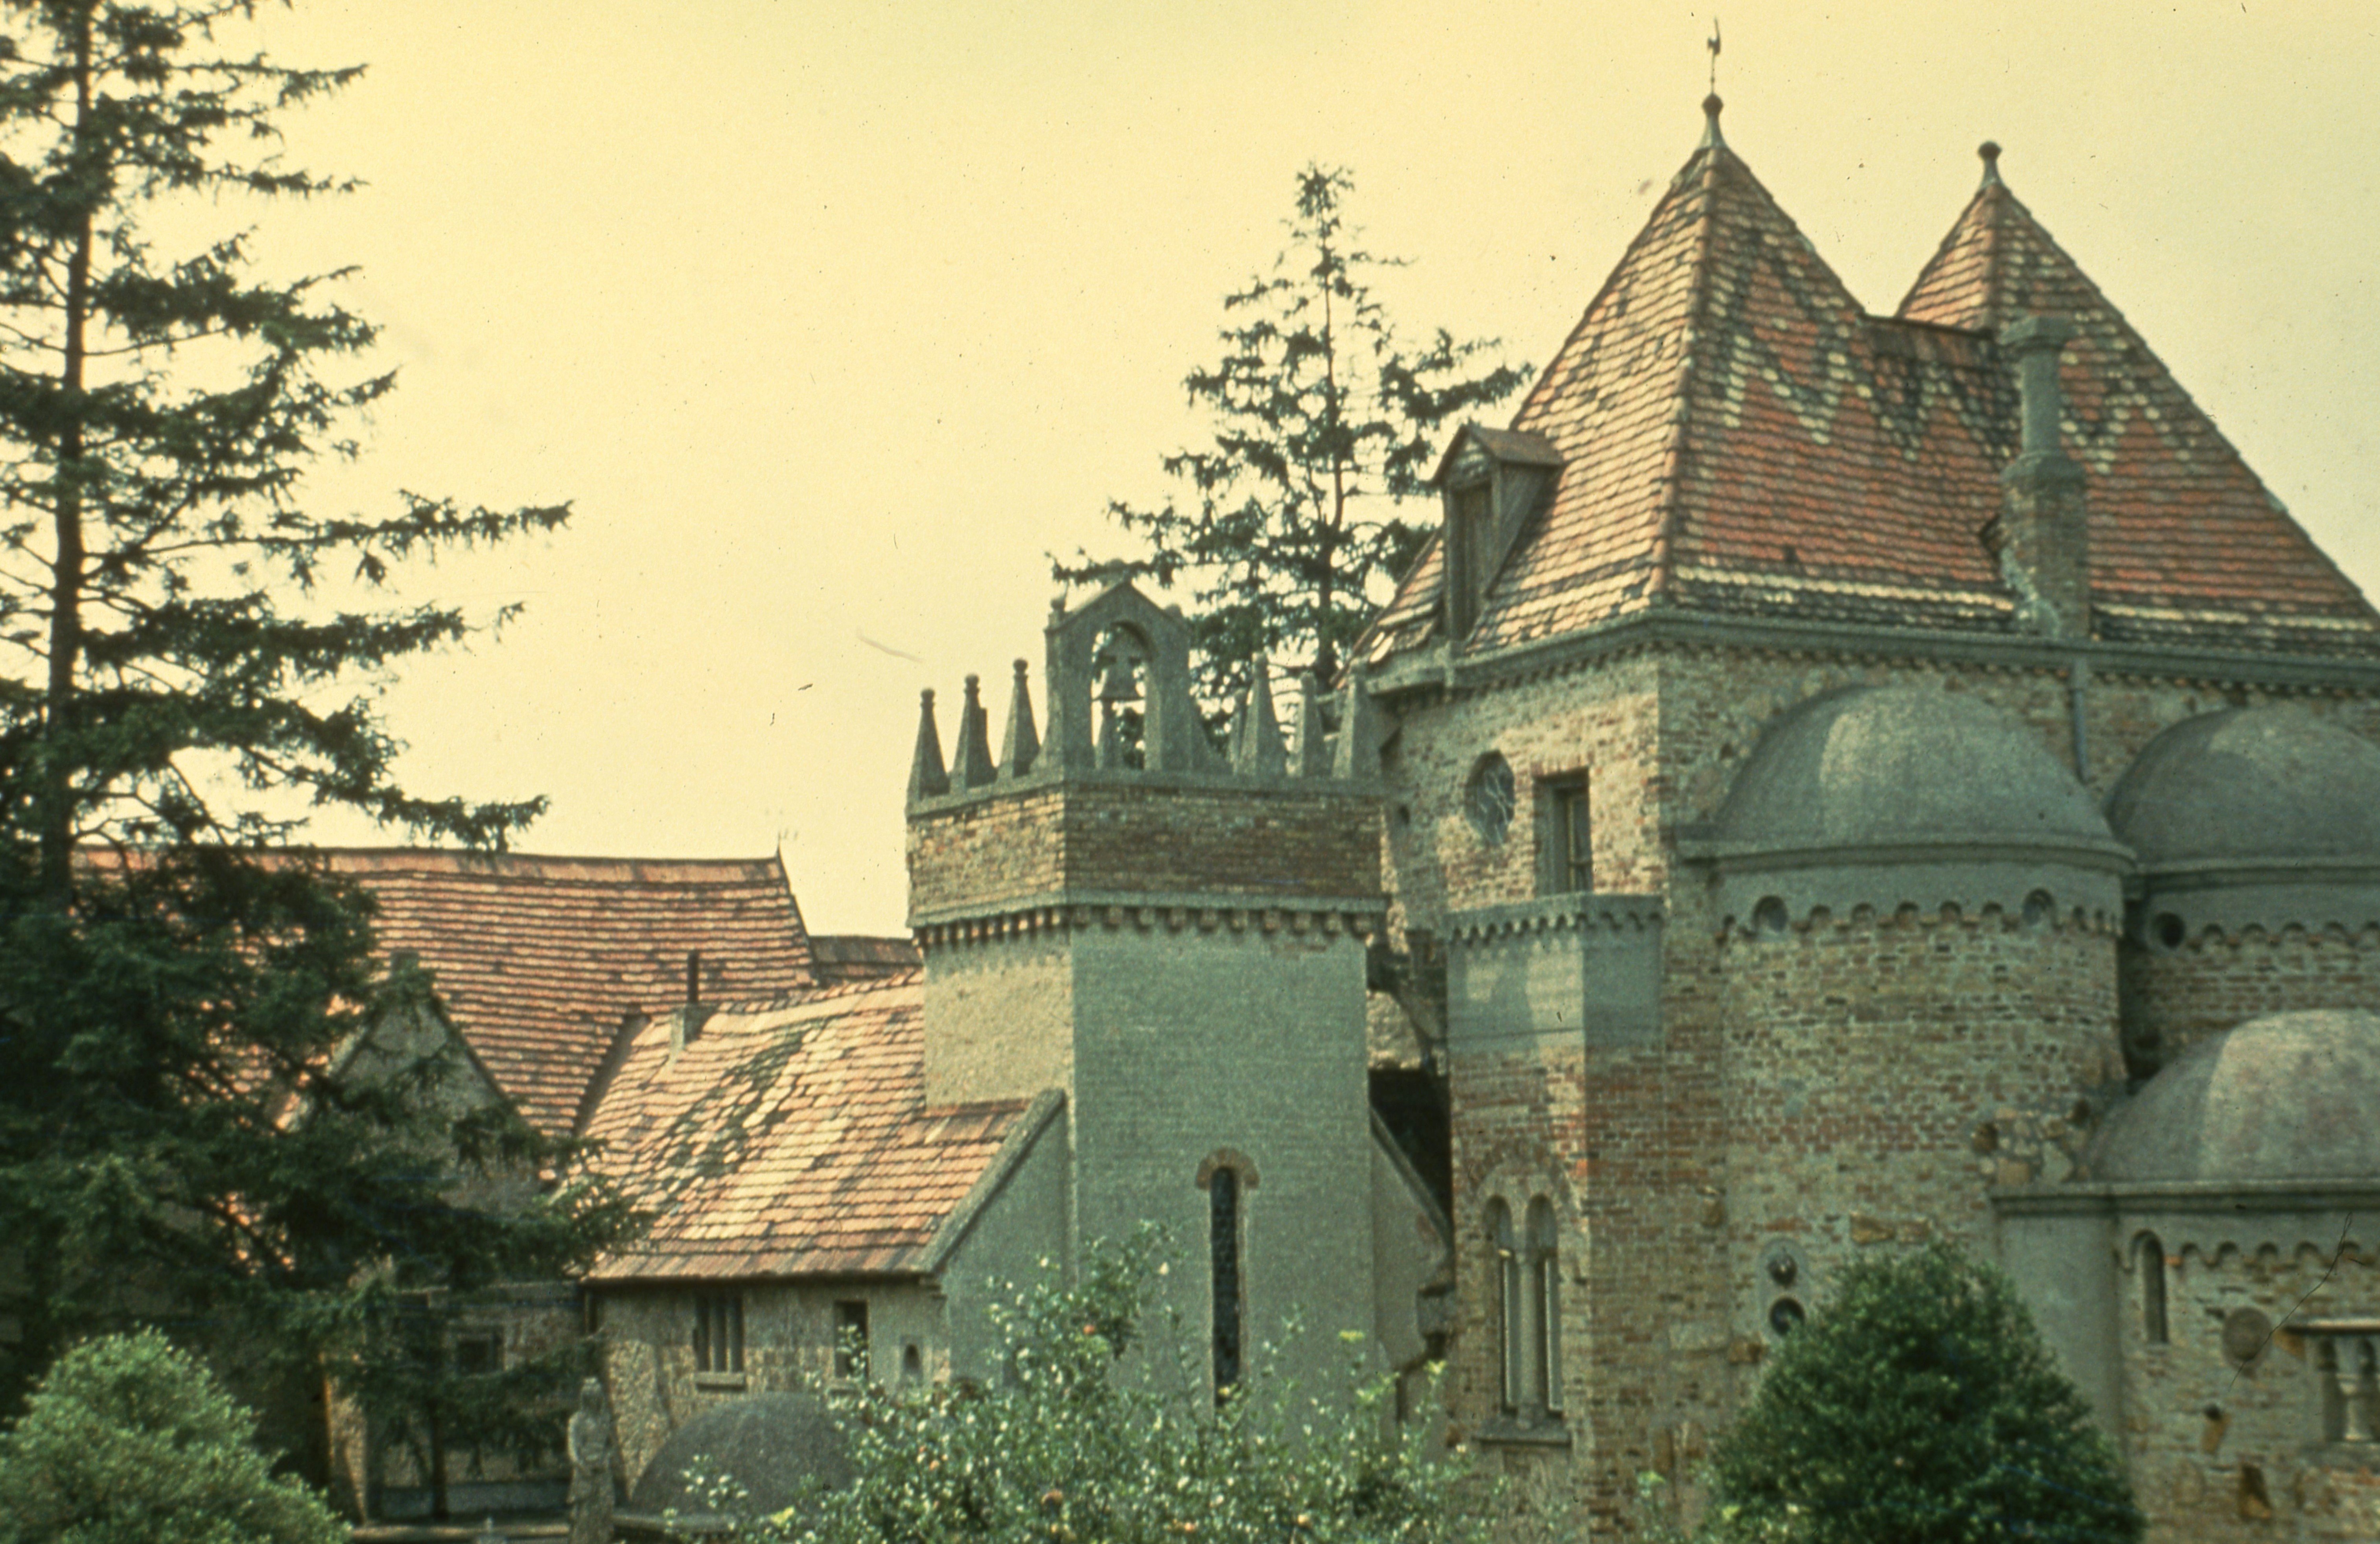 Színes fotó a székesfehérvári Bory-várról (MTA Pszichiátriai Művészeti Gyűjtemény CC BY-NC-SA)